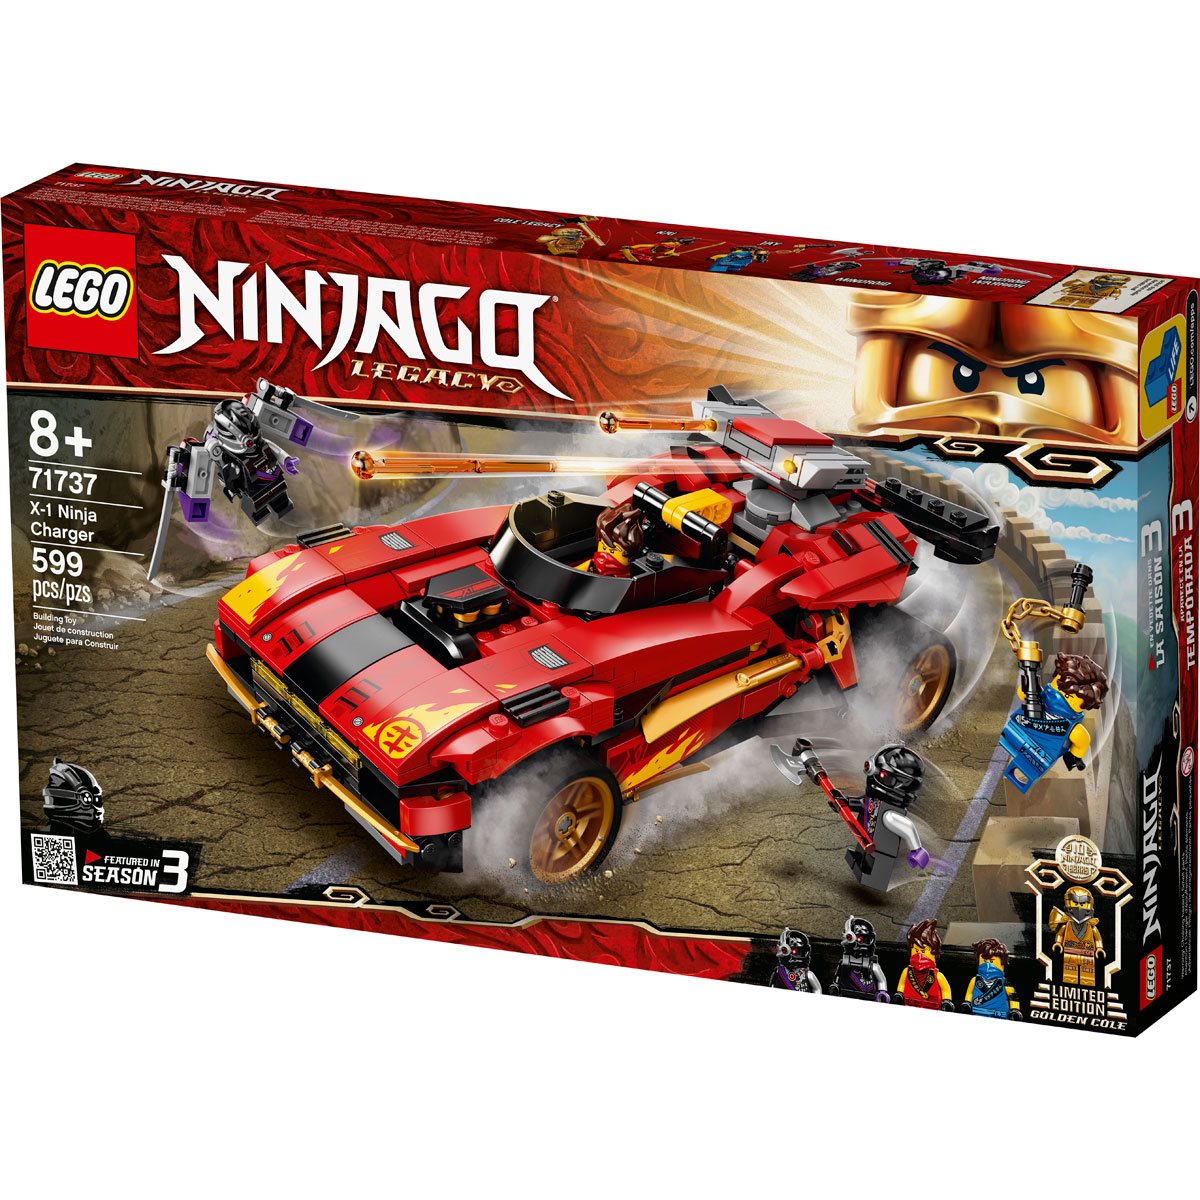 LEGO 71737 Ninjago X-1 Ninja Charger - Entertainment